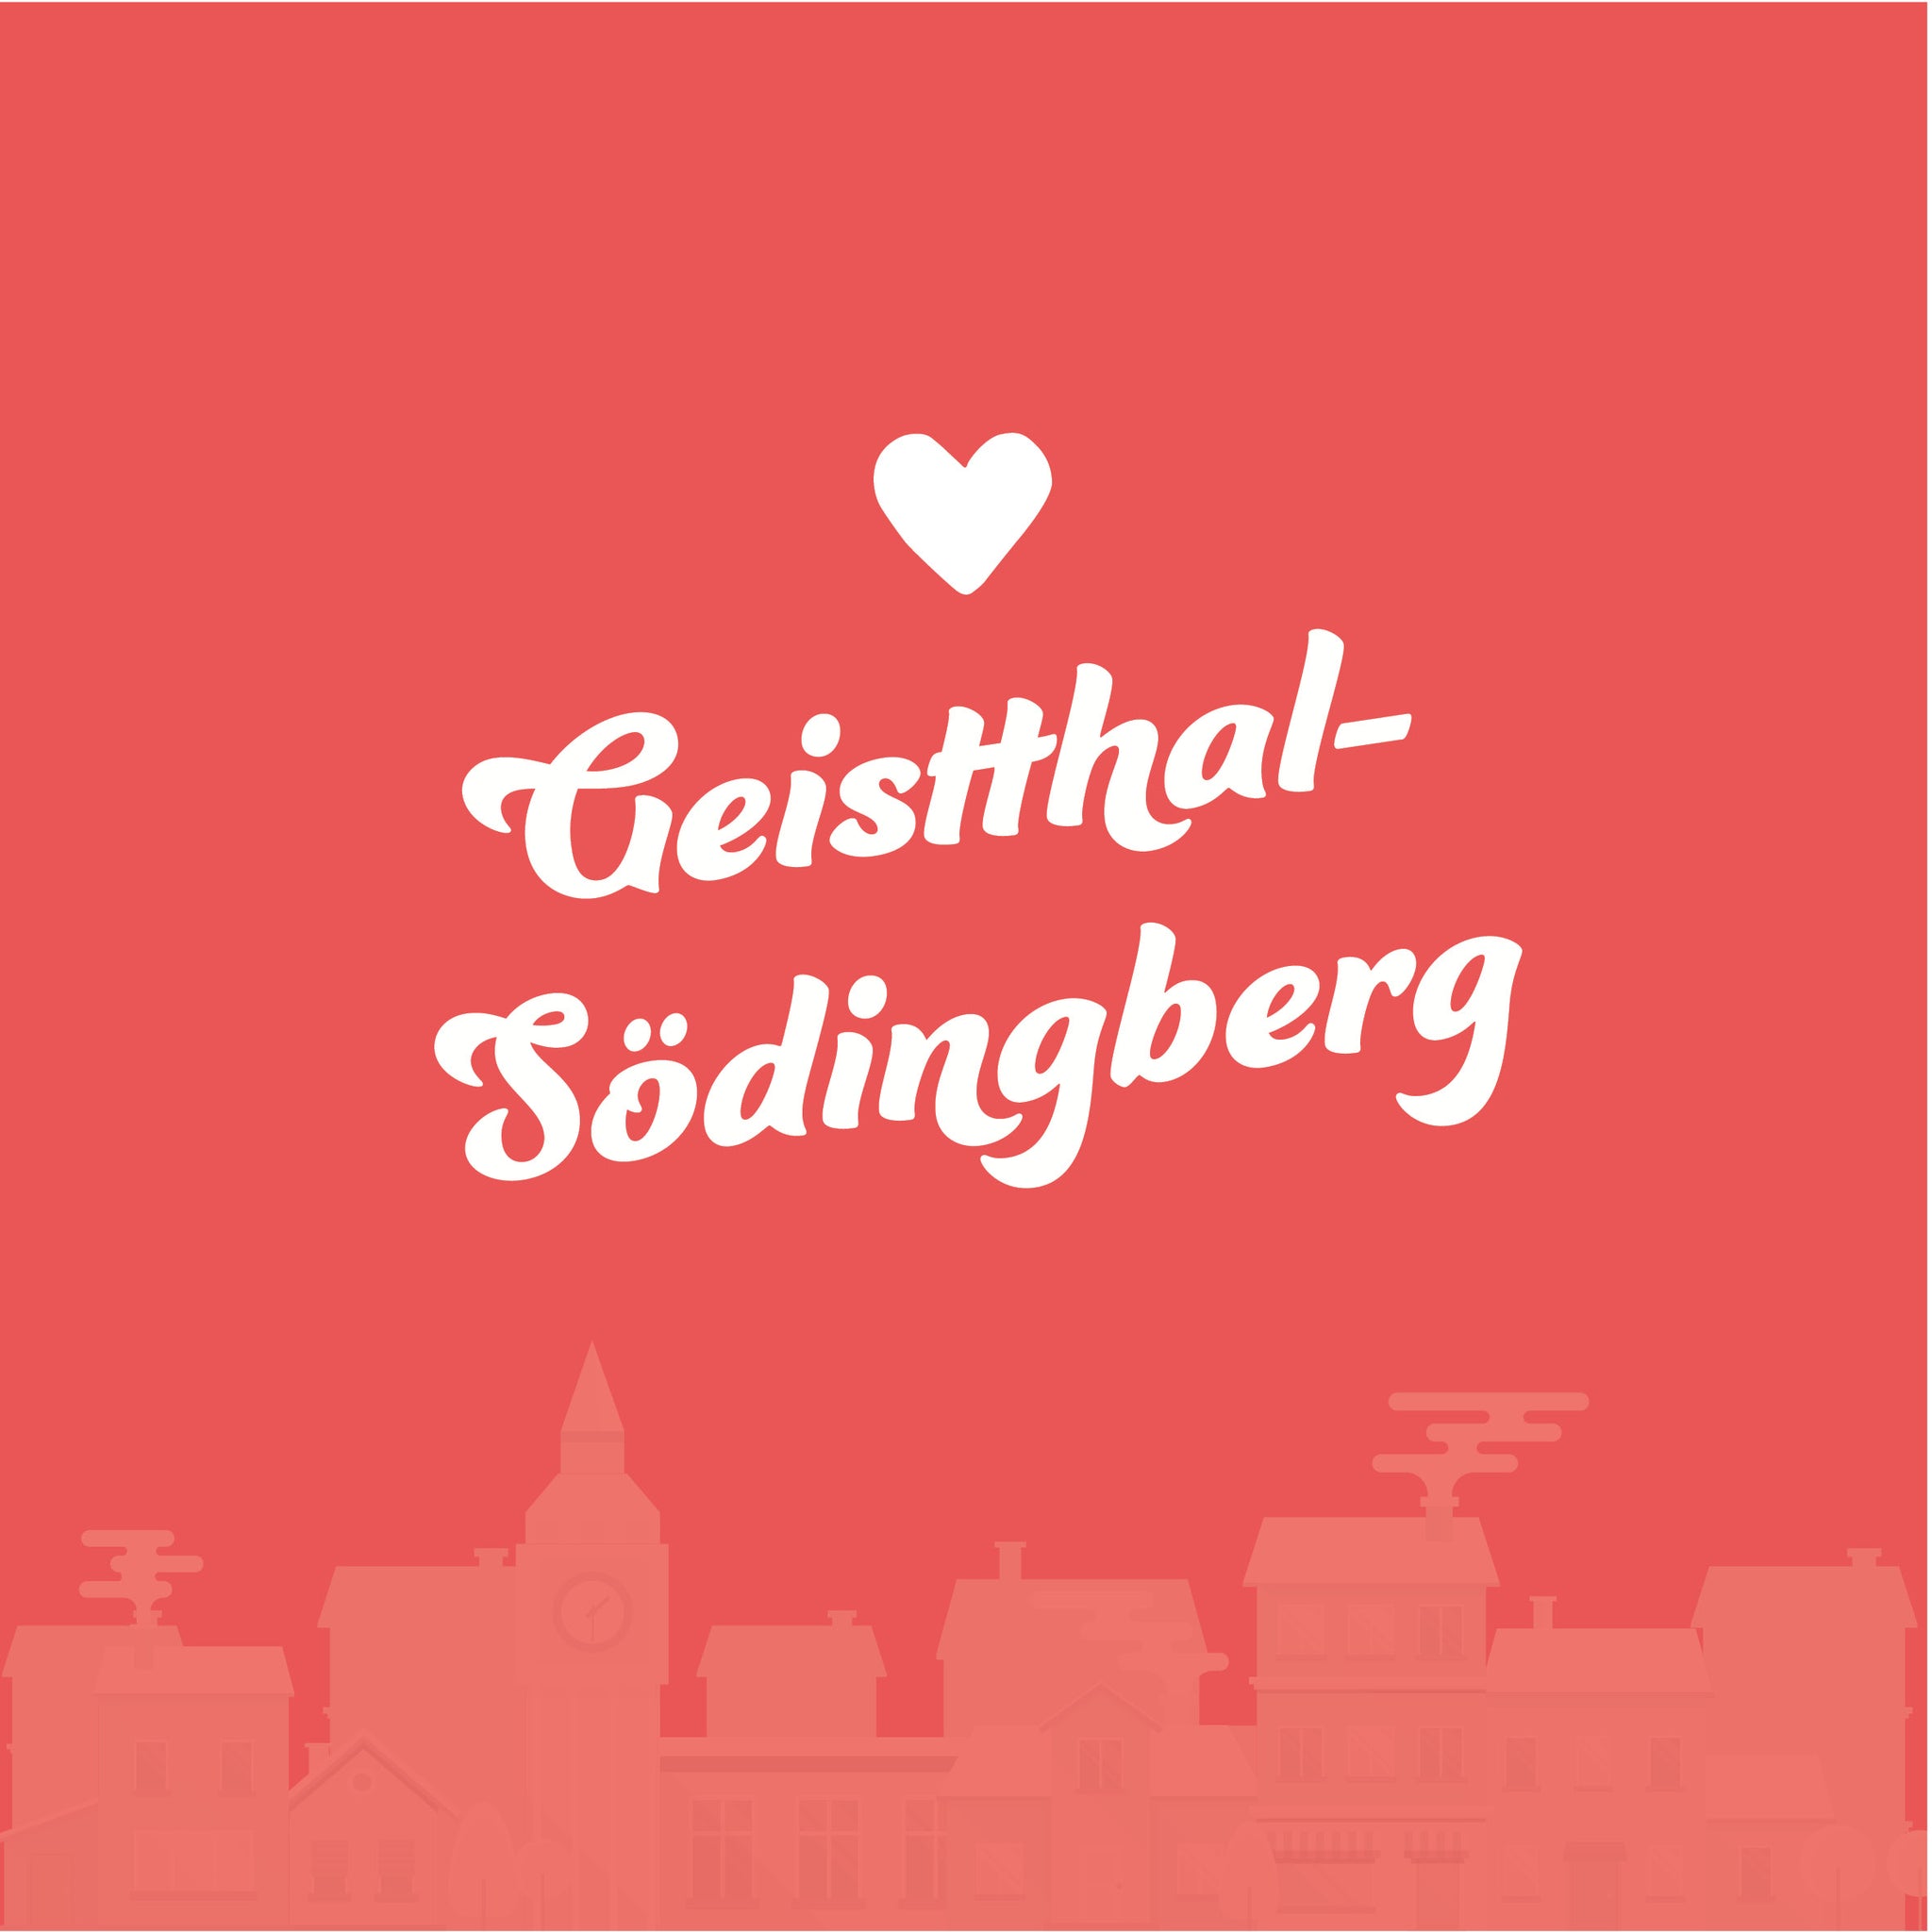 Geistthal-Södingberg